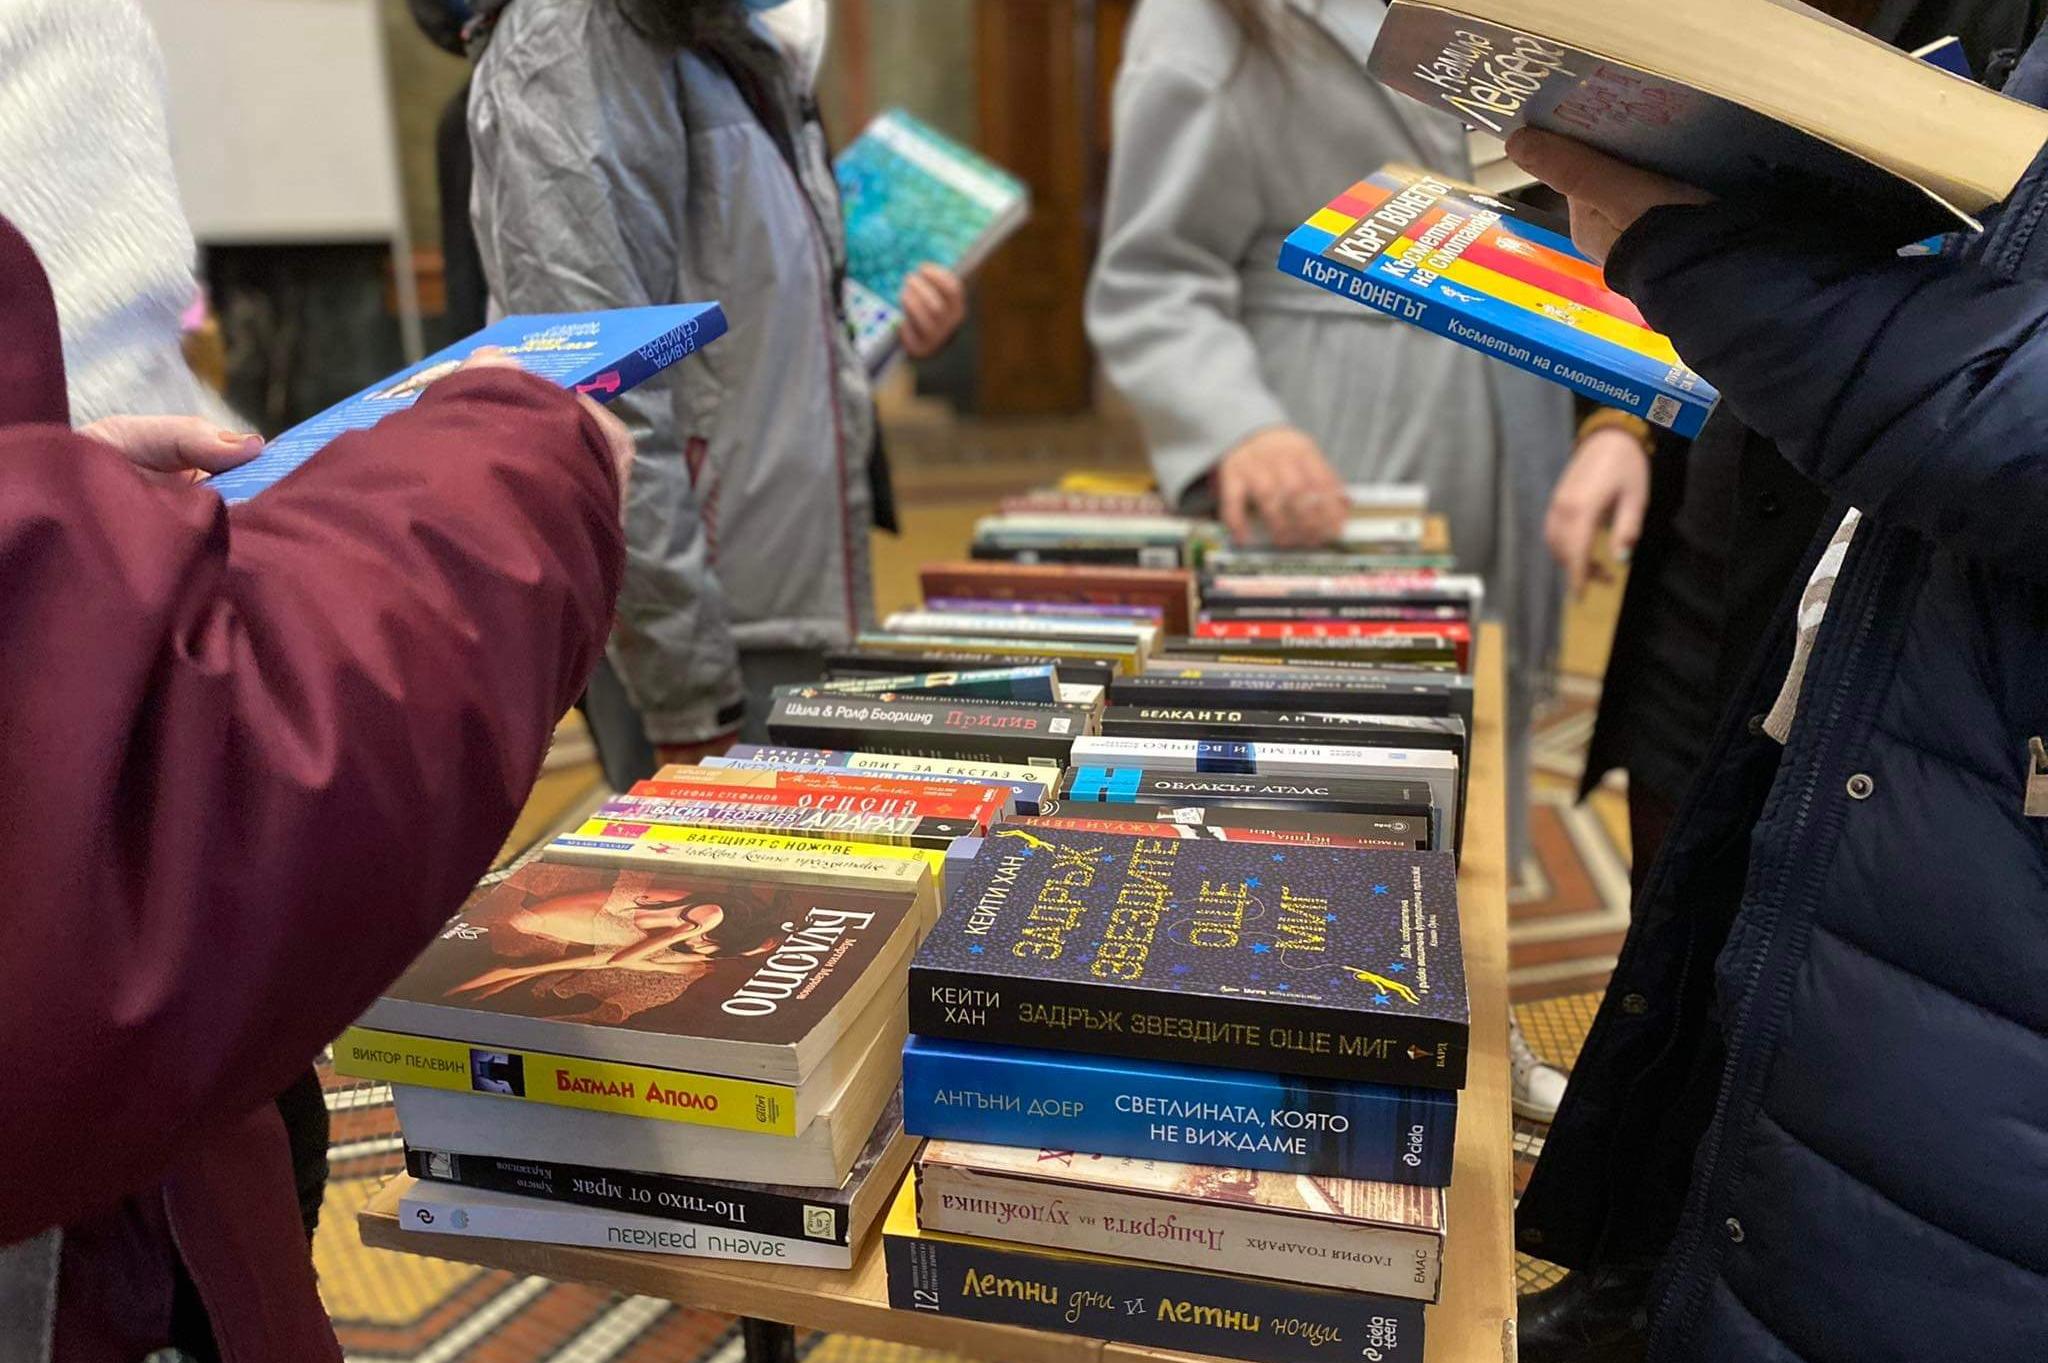 Софийски студенти организират книжен базар в подкрепа на Българската Коледа